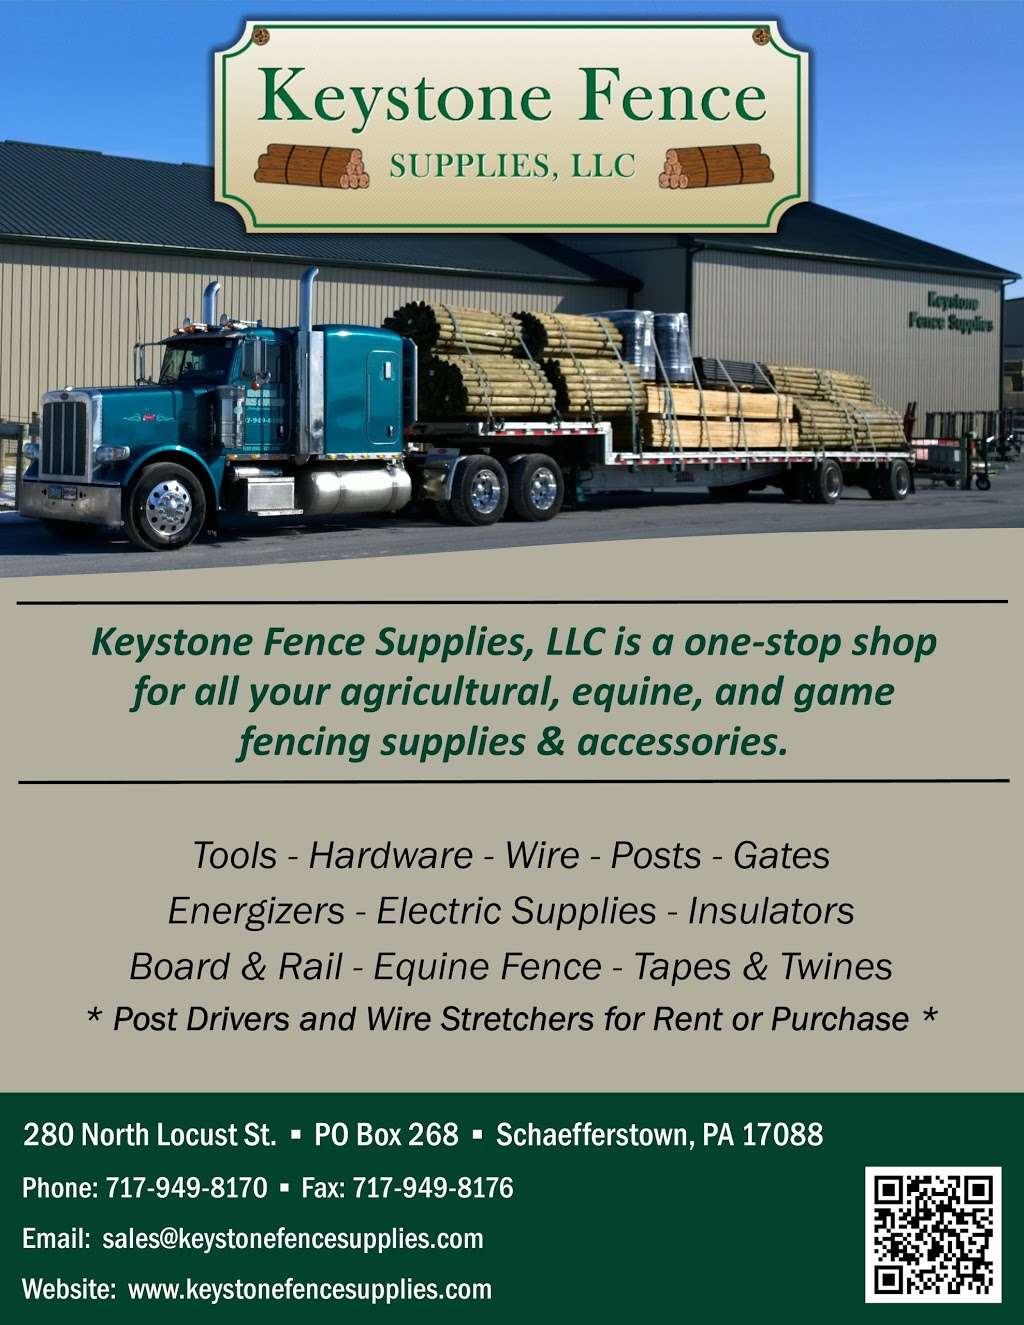 Keystone Fence Supplies | 280 North Locust St, Schaefferstown, PA 17088 | Phone: (717) 949-8170